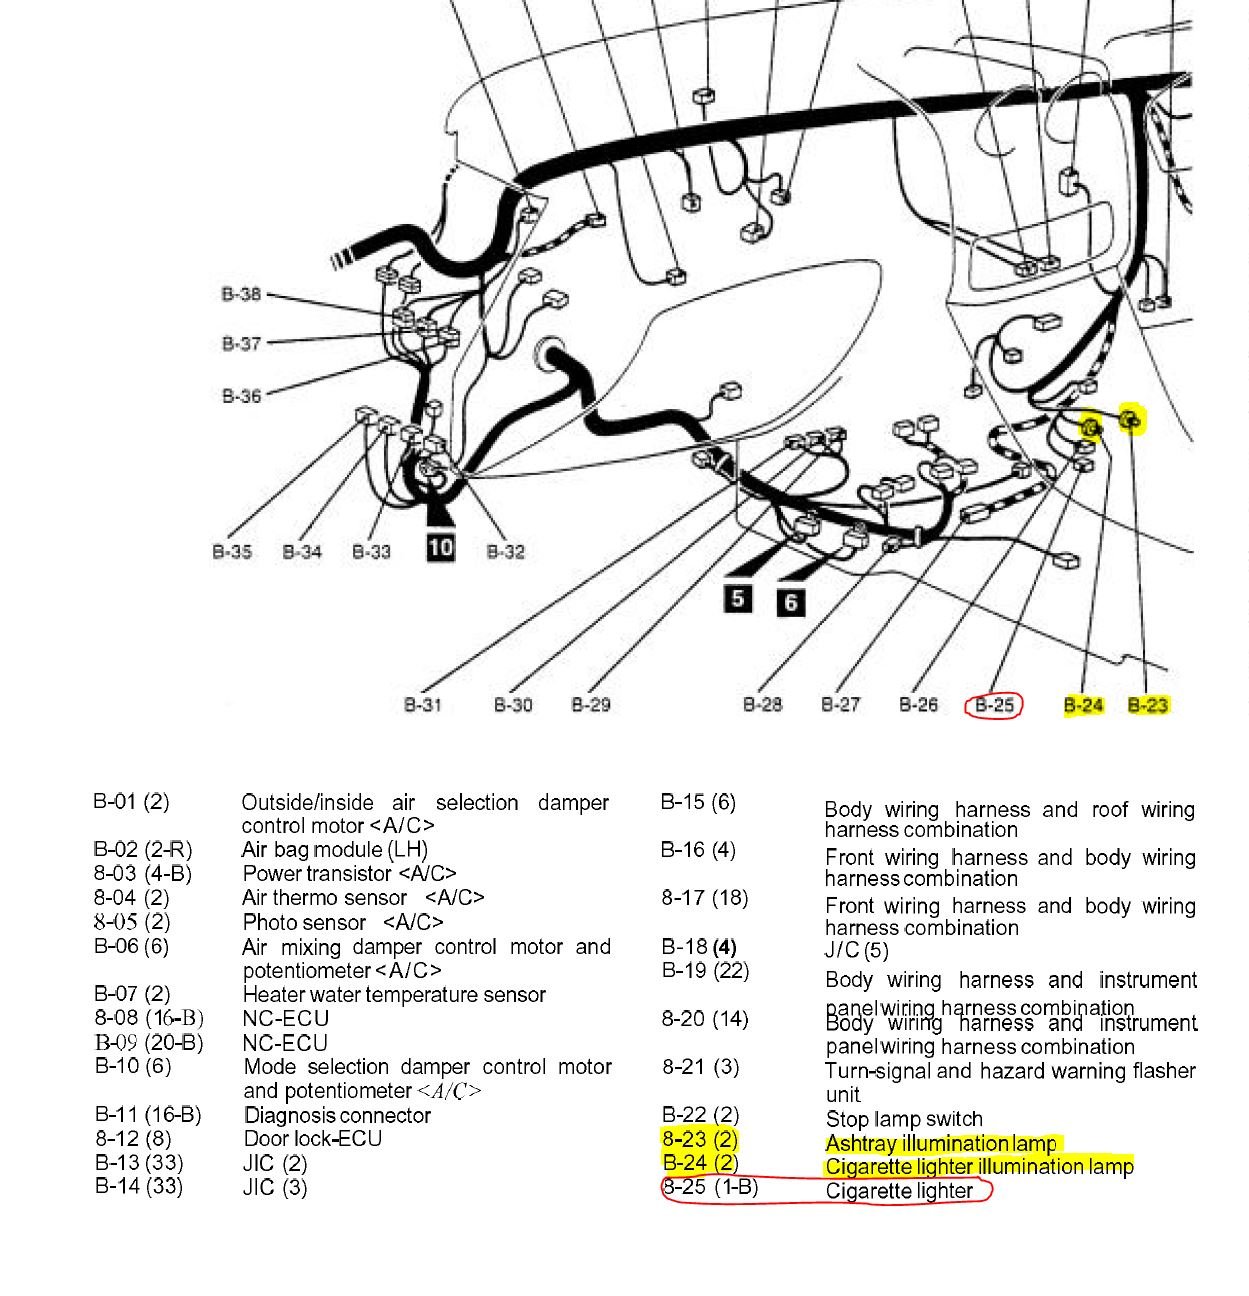 FTO Shifter Wiring harness_evo-gsr_2020-07-14.JPG